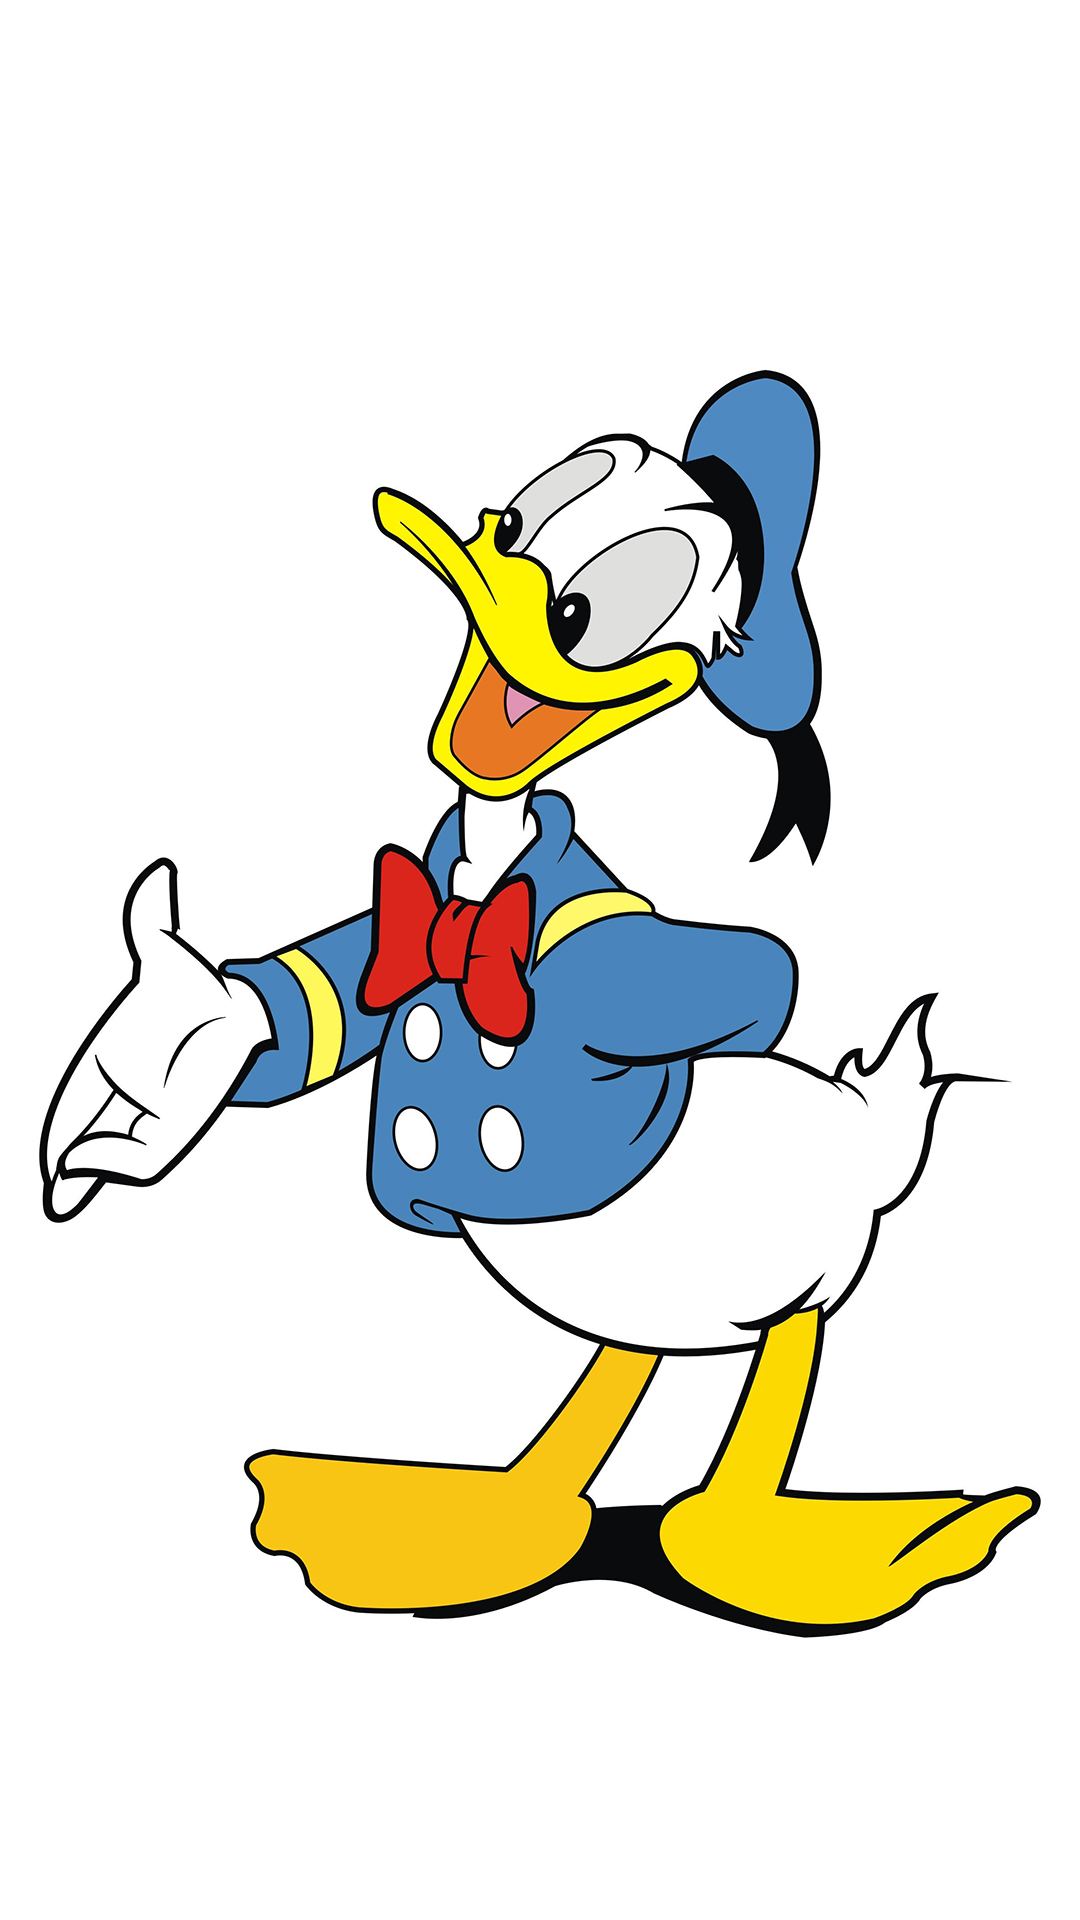 历史上的今天,迪士尼动画片重要形象唐老鸭首次亮相